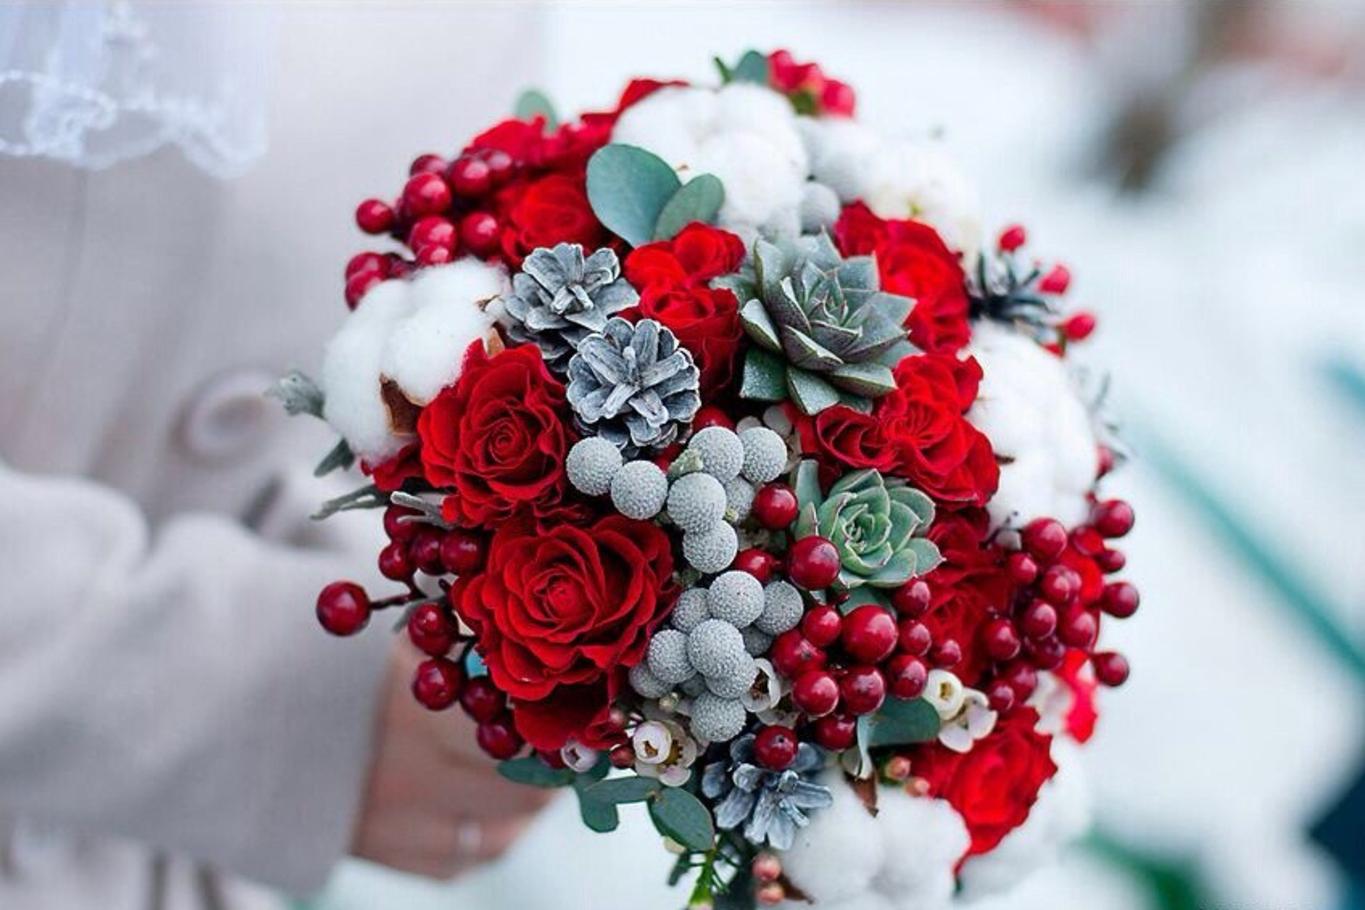 Какие цветы выбирать для свадьбы зимой. Советы от fiftyflowers.ru